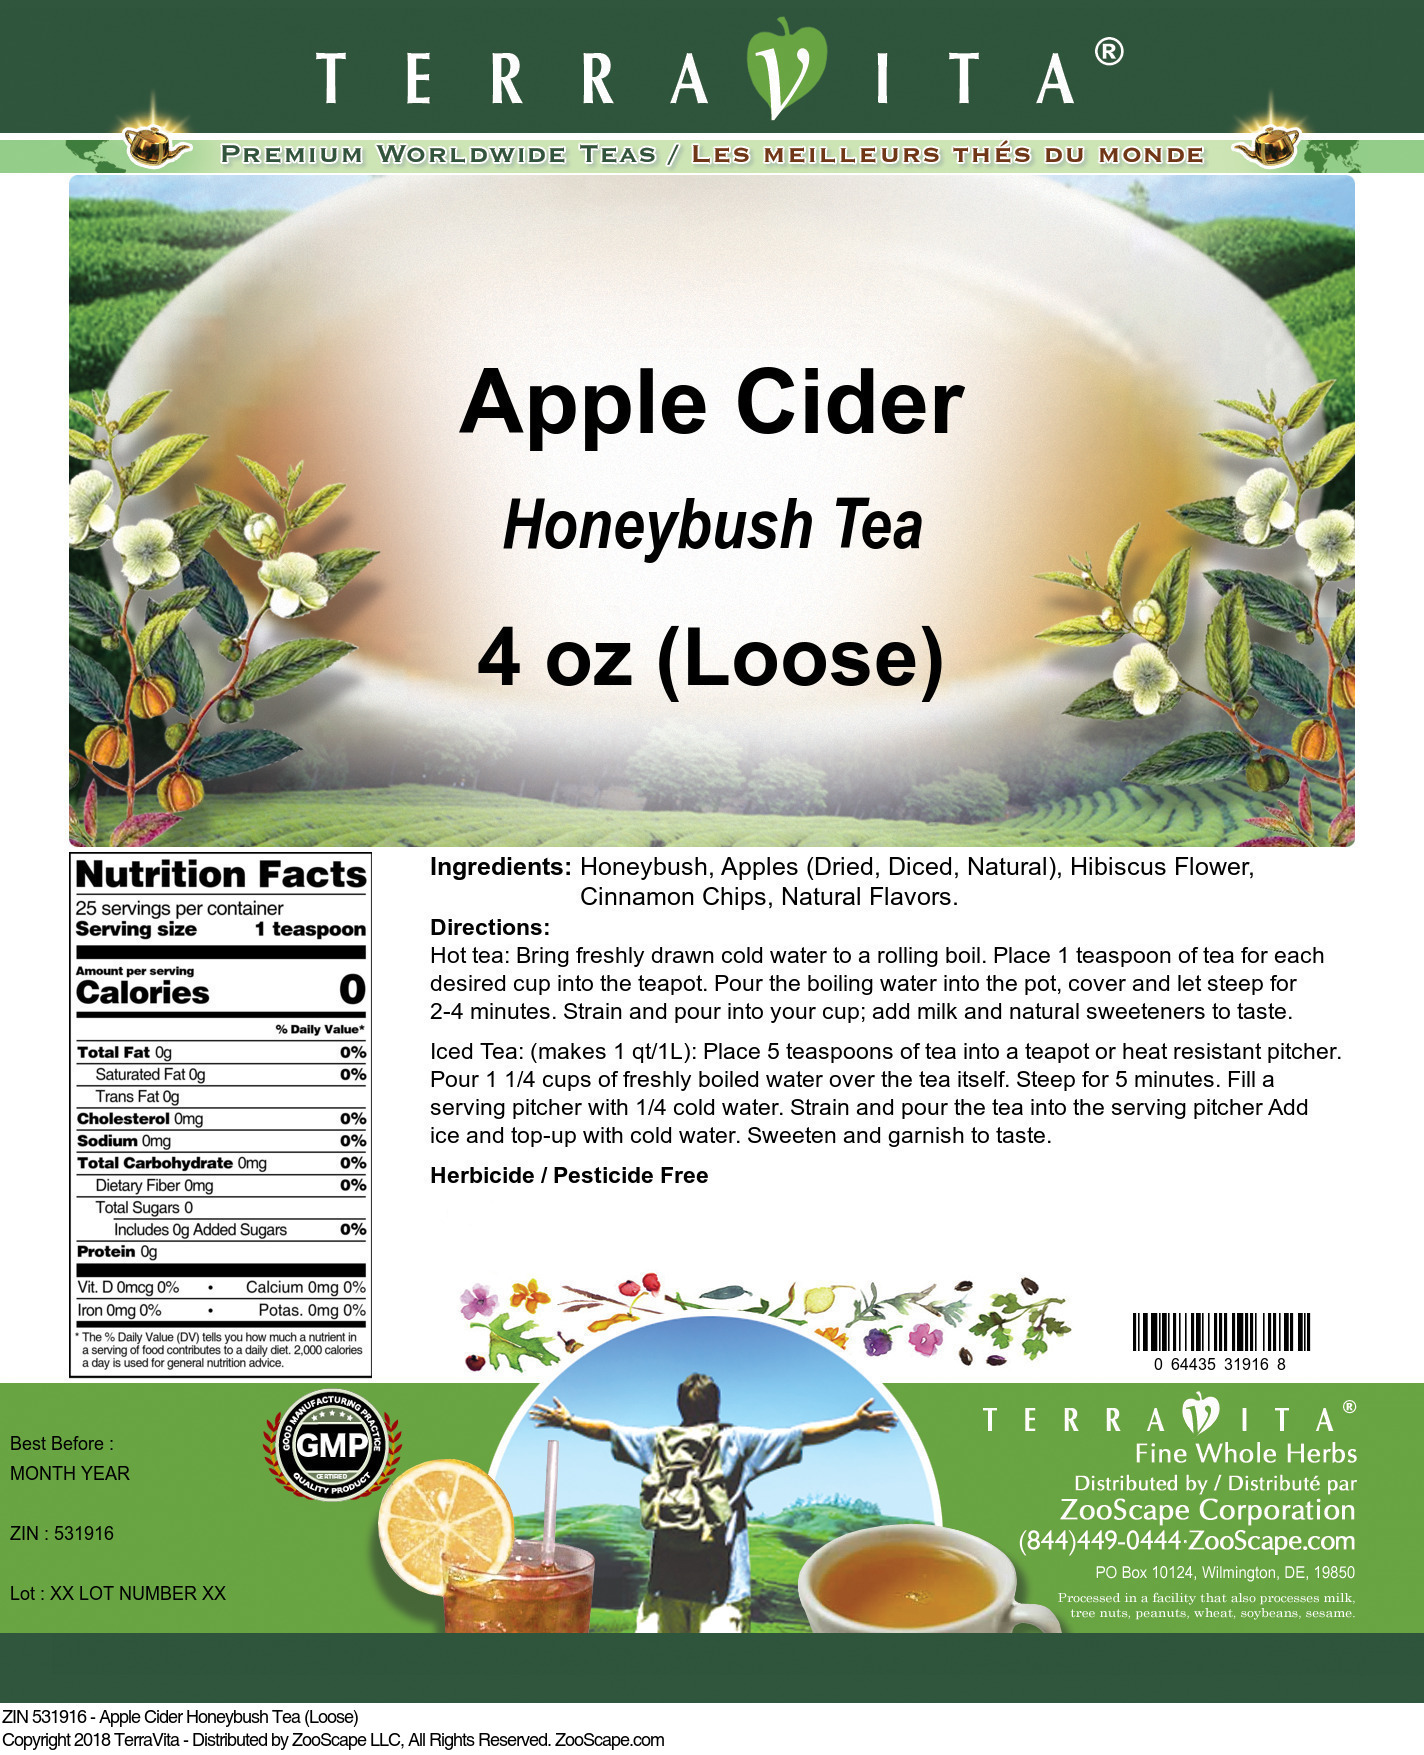 Apple Cider Honeybush Tea (Loose) - Label